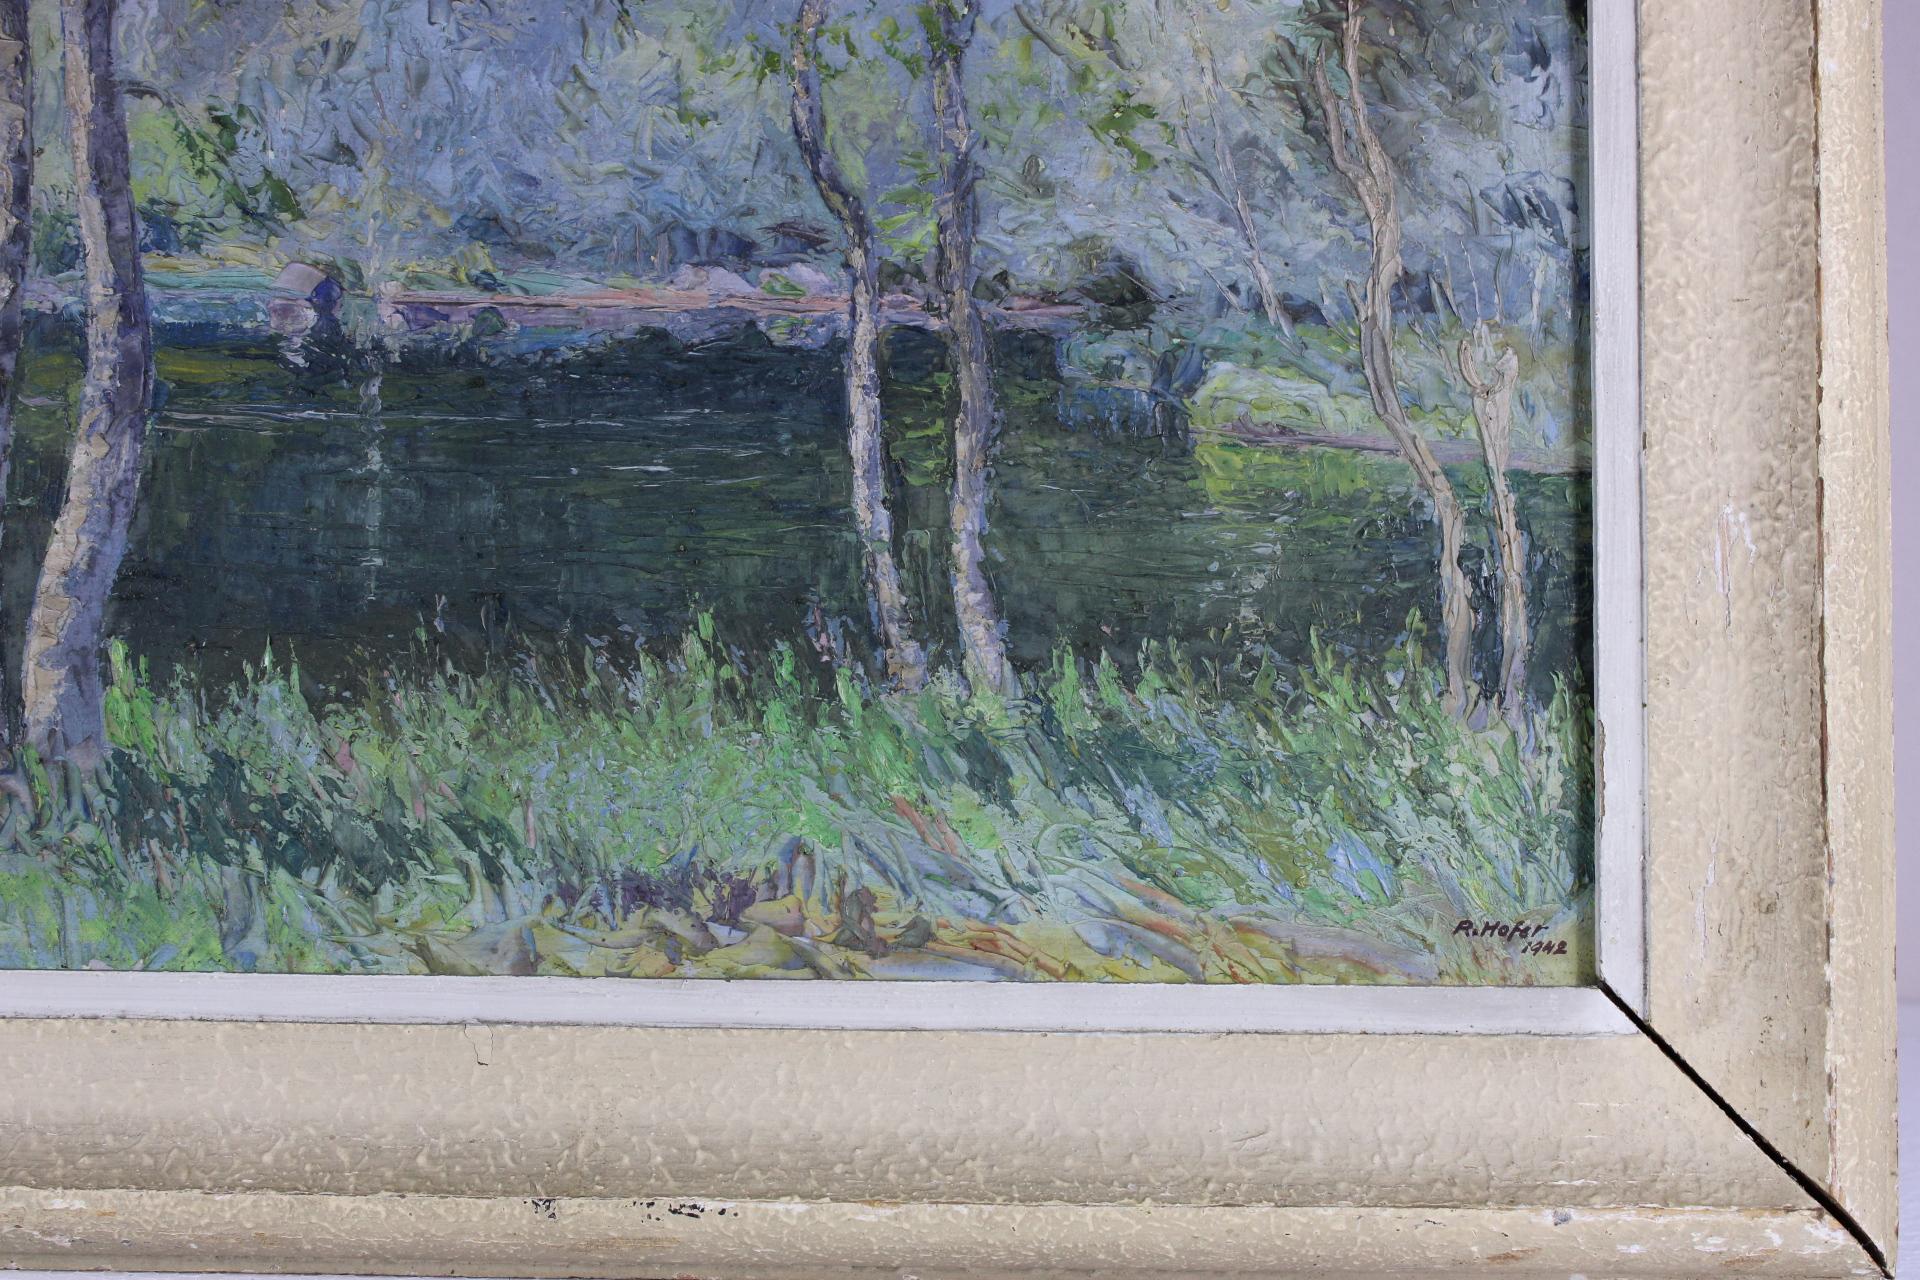 Landschaft Frankreichslandschaft, Original, Öl auf Karton, impressionistischer Stil, signiert (Impressionismus), Painting, von Robert Hofer